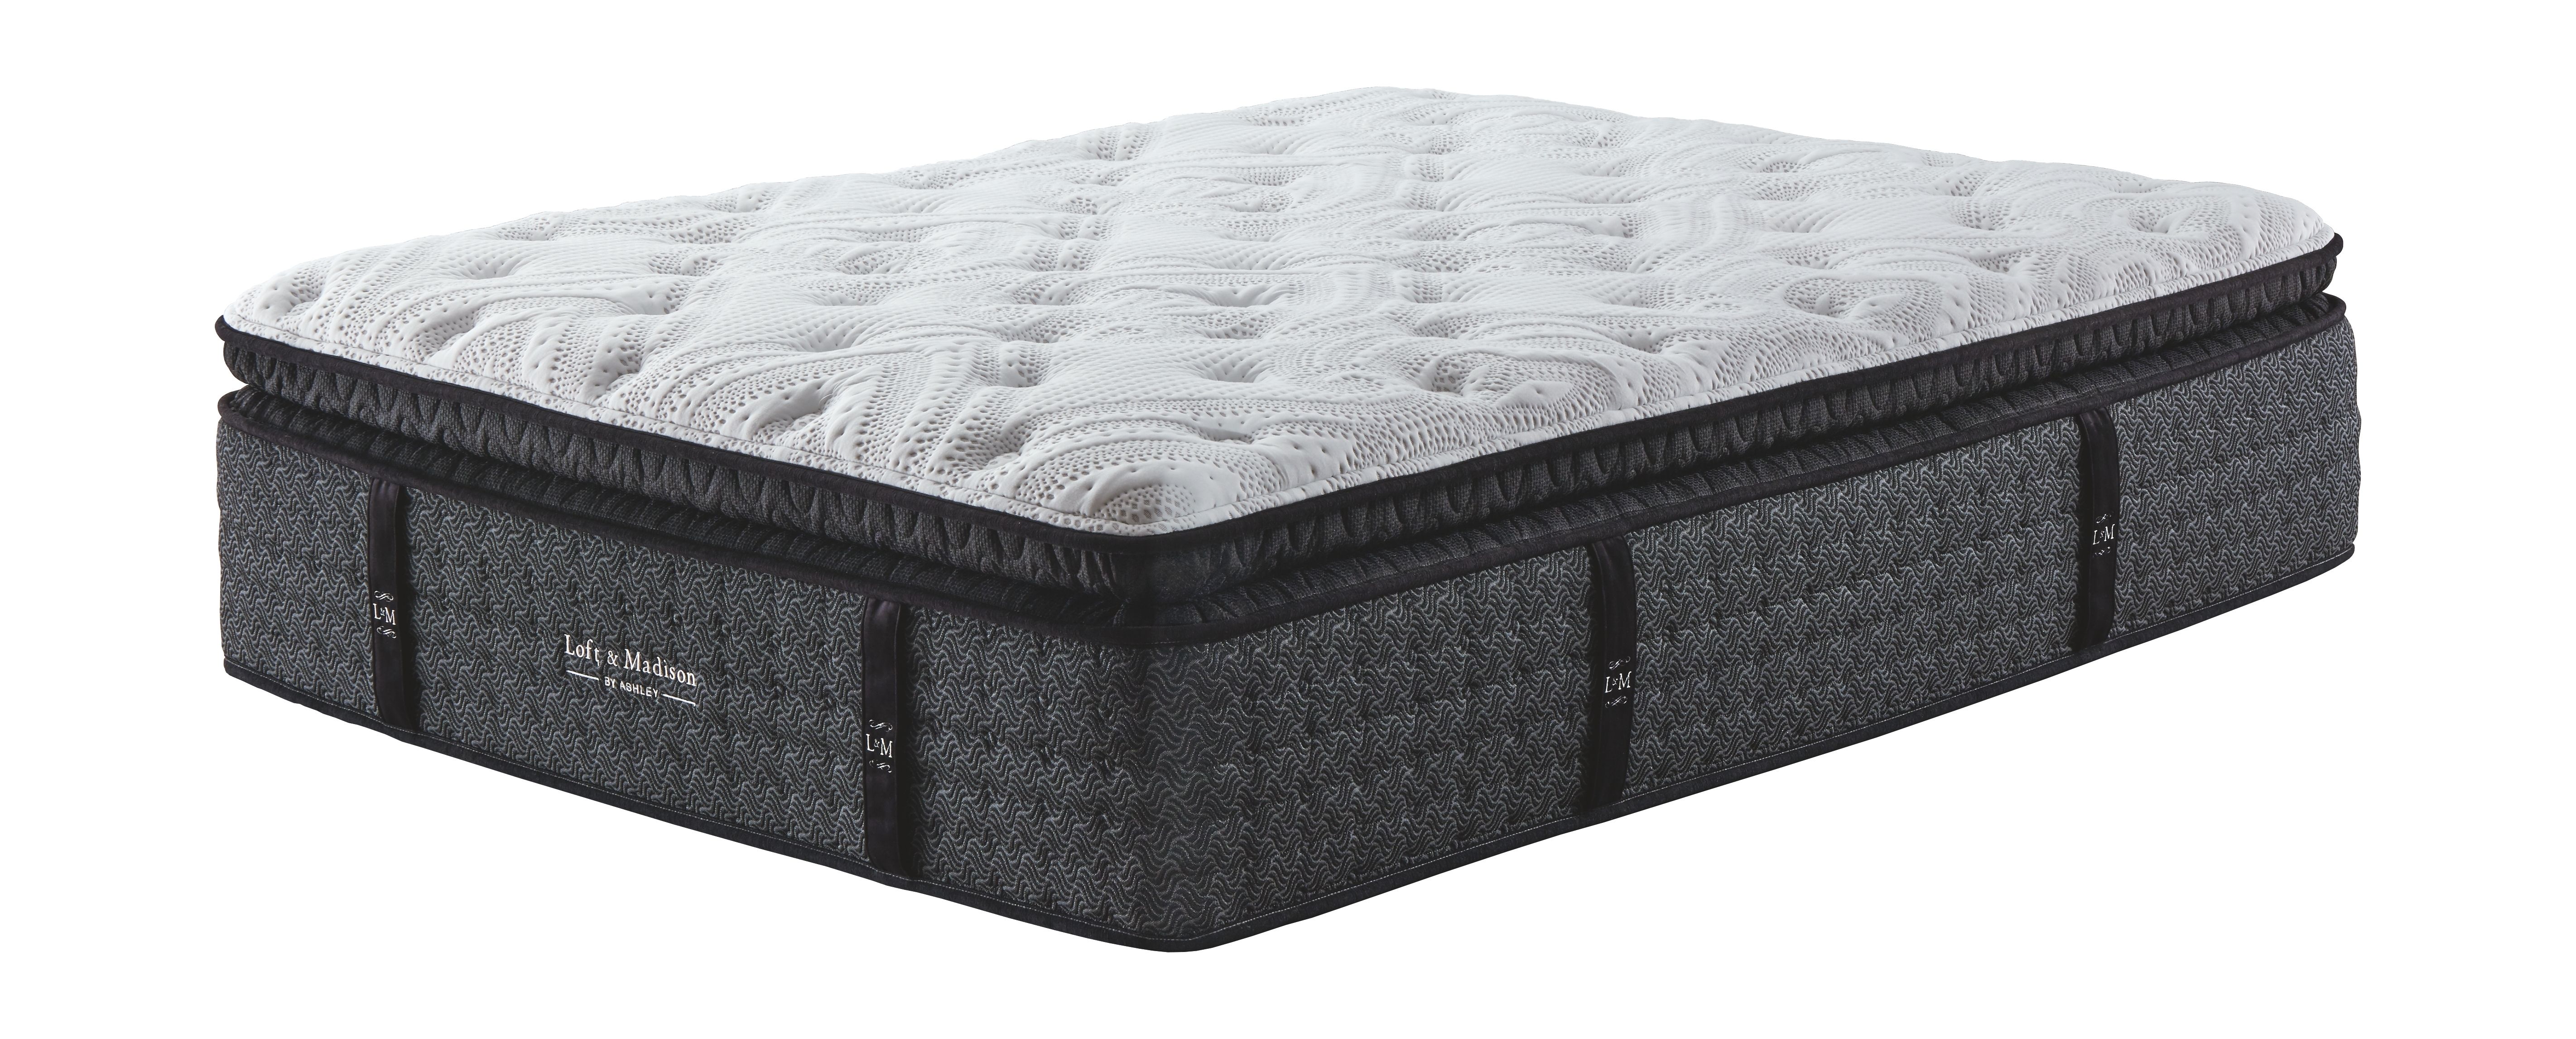 ultra plush mattress amazon